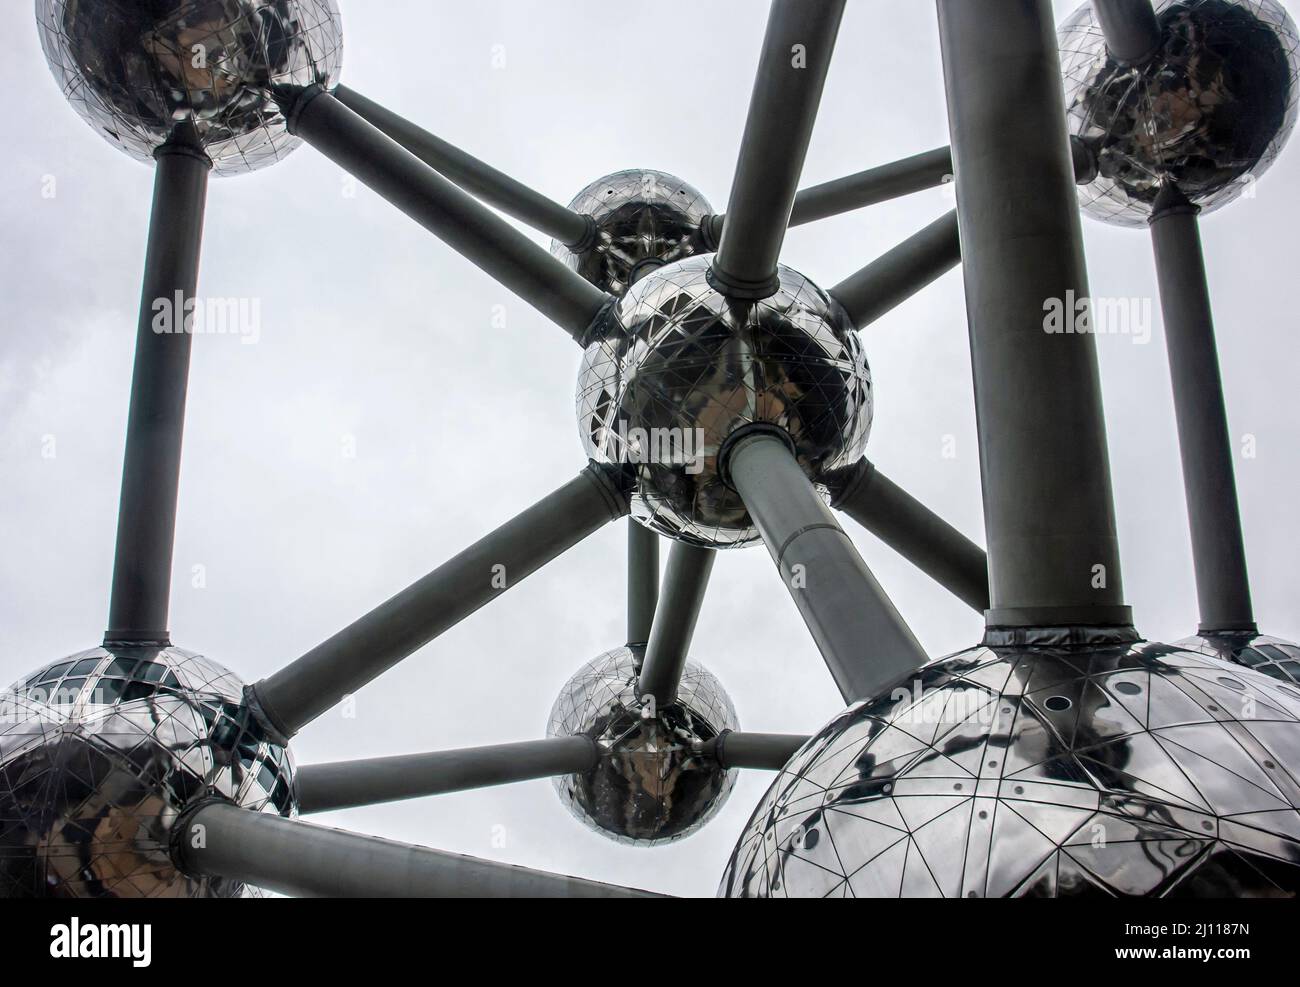 Dettaglio dell'Atomium di Bruxelles. Edificio che rappresenta un cristallo di ferro ingrandito 165 miliardi di volte. Foto Stock